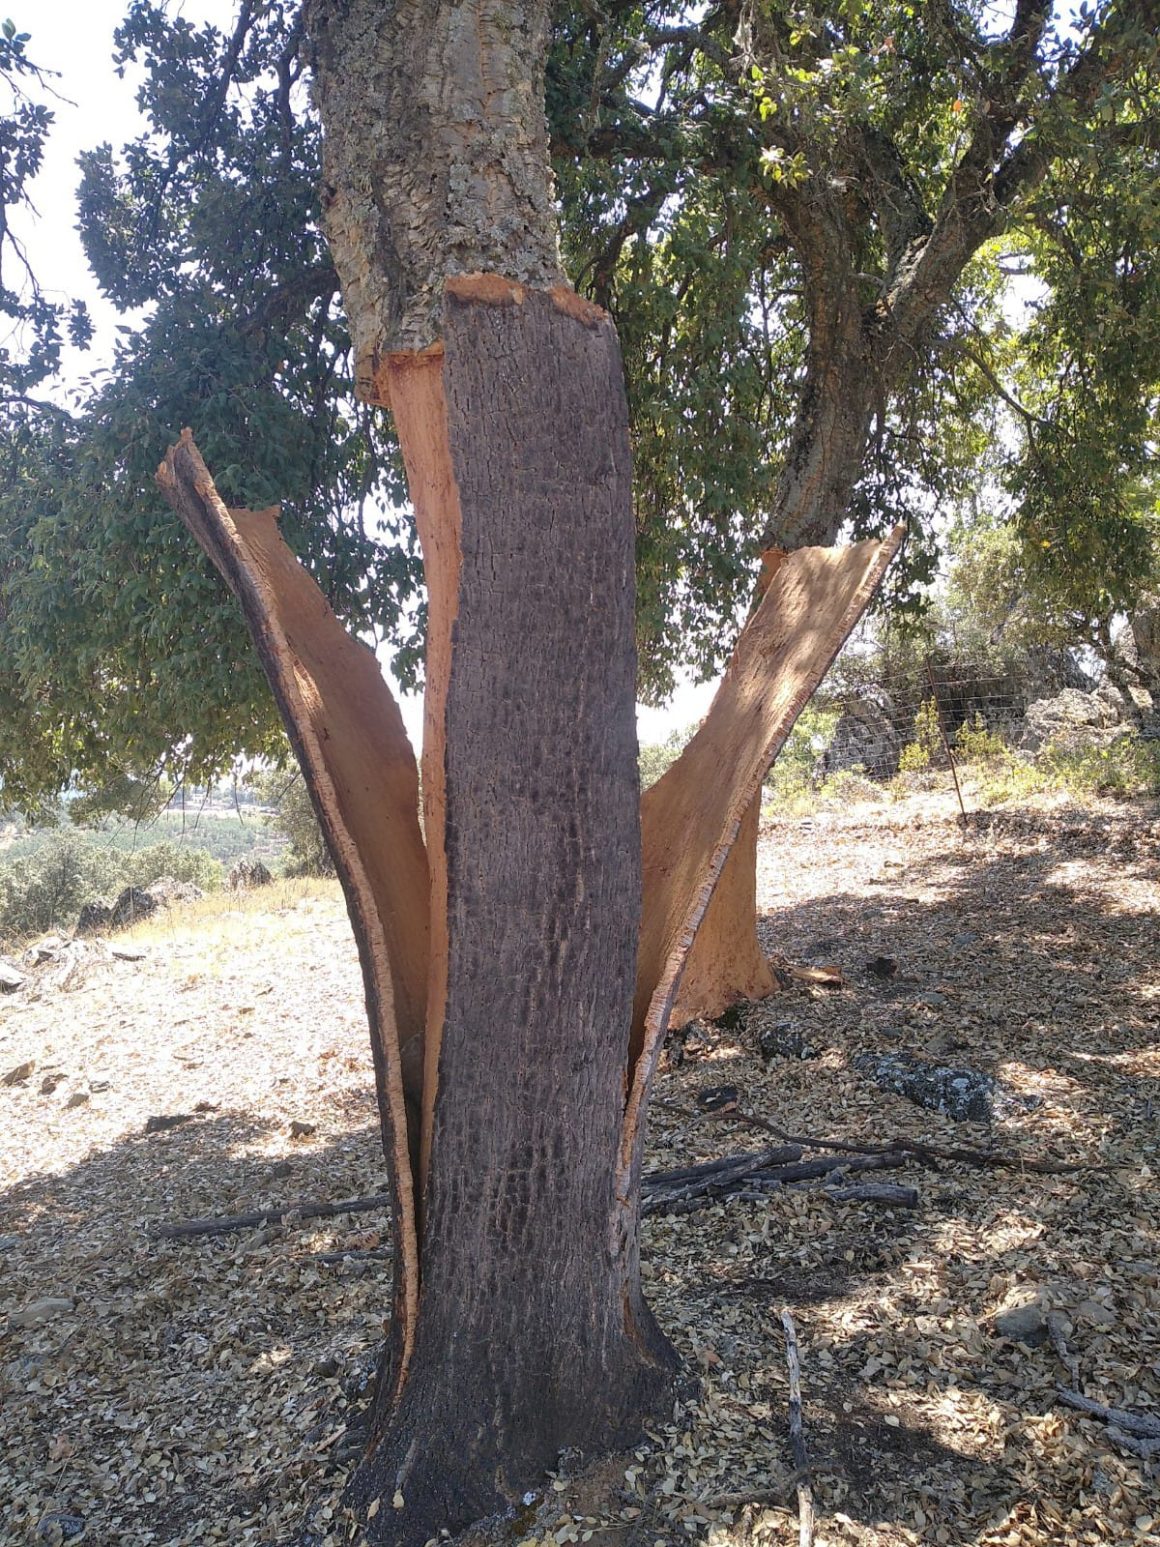 Aprovechamientos de corcho (Quercus Suber) del monte de utilidad pública Tierras de Talavera, propiedad del ayuntamiento de los Navalucillos (Toledo)